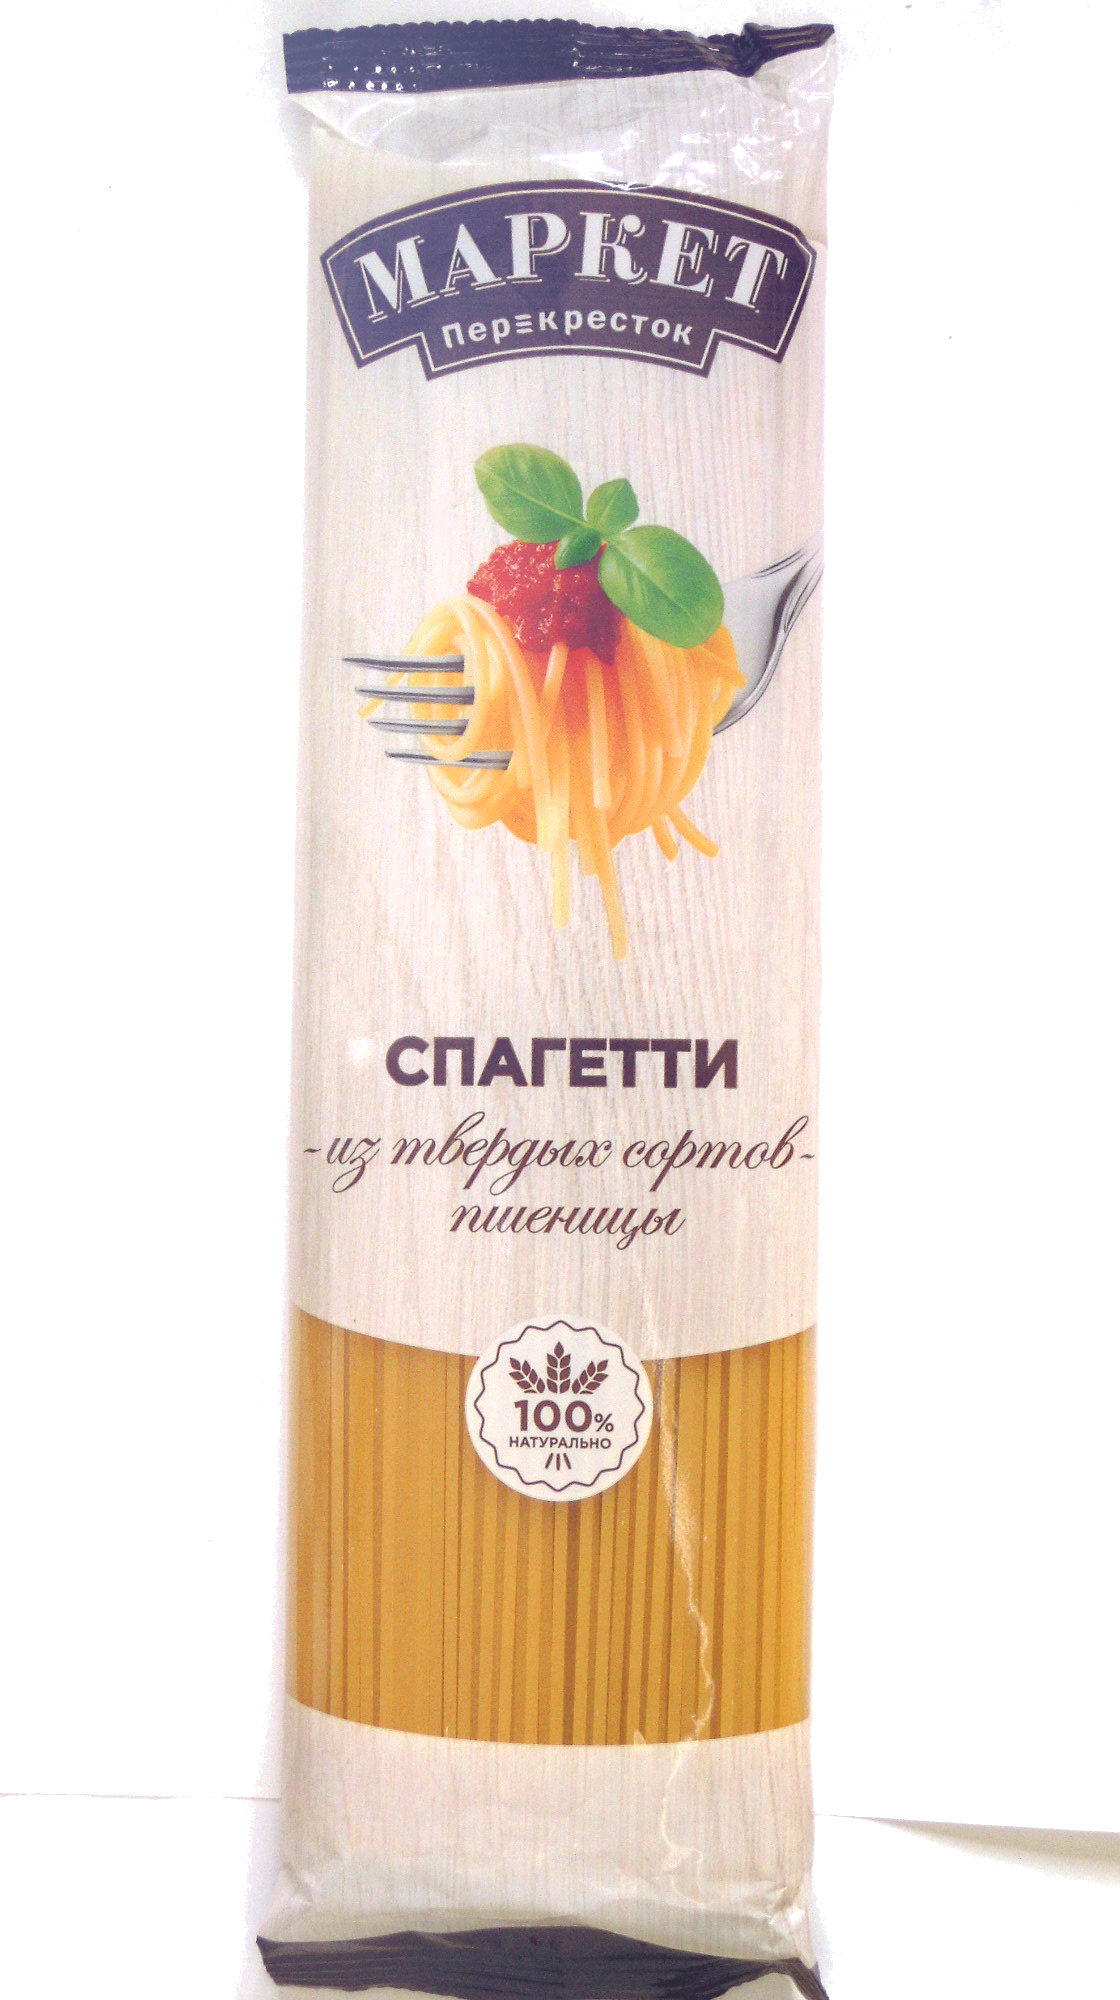 Спагетти из твердых сортов пшеницы - Product - ru